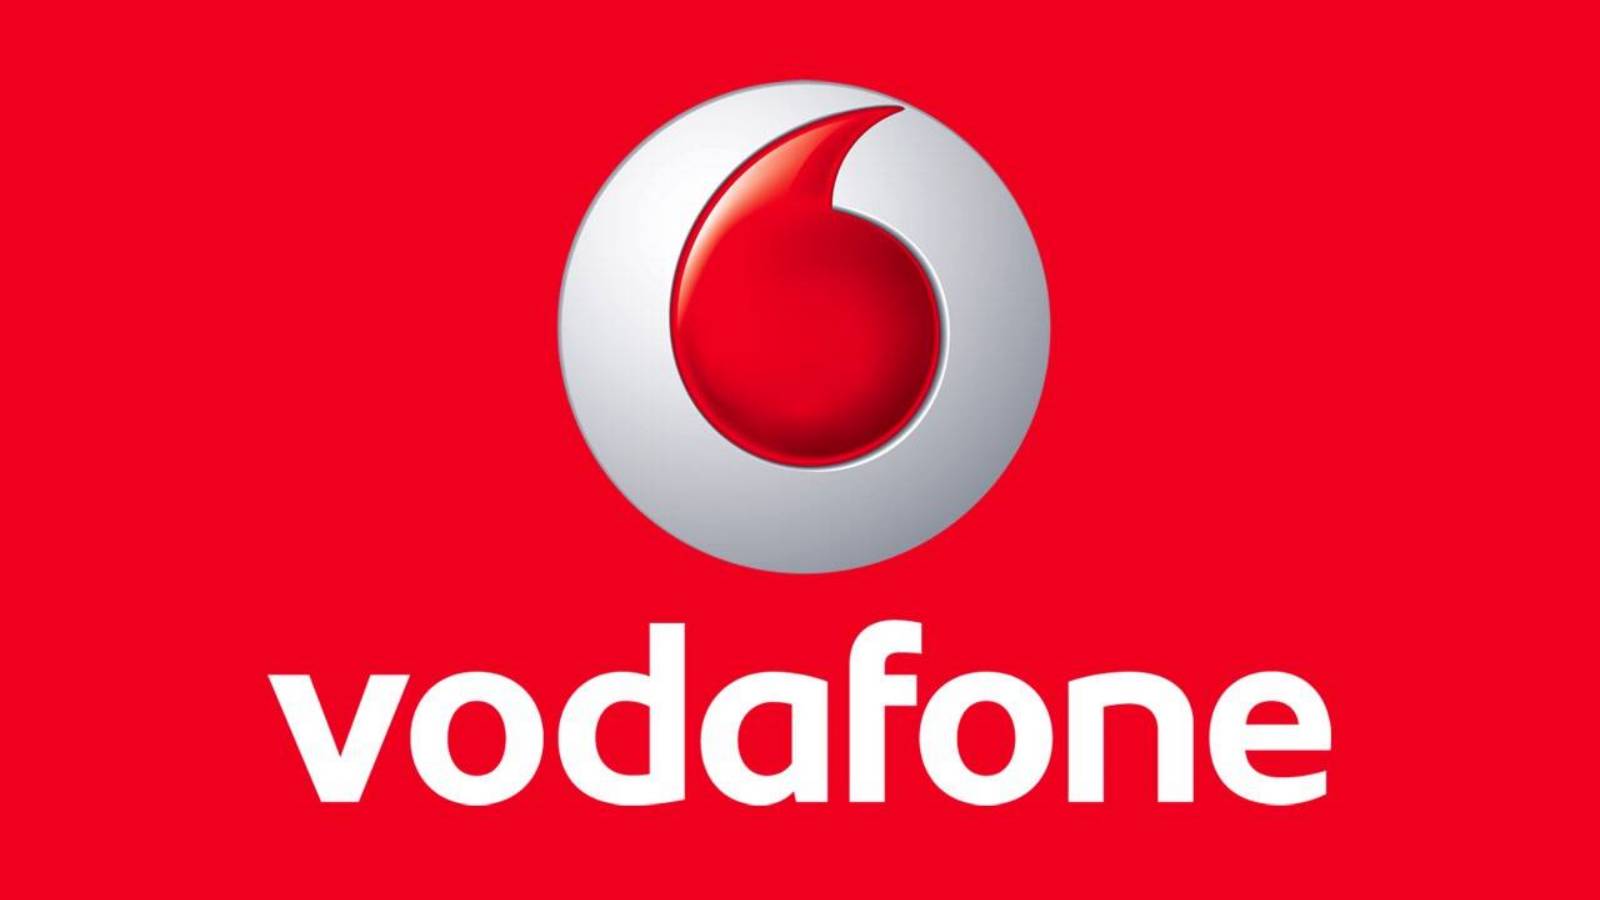 Officiële aankondiging van Vodafone die klanten GRATIS 6 maanden dagen geeft